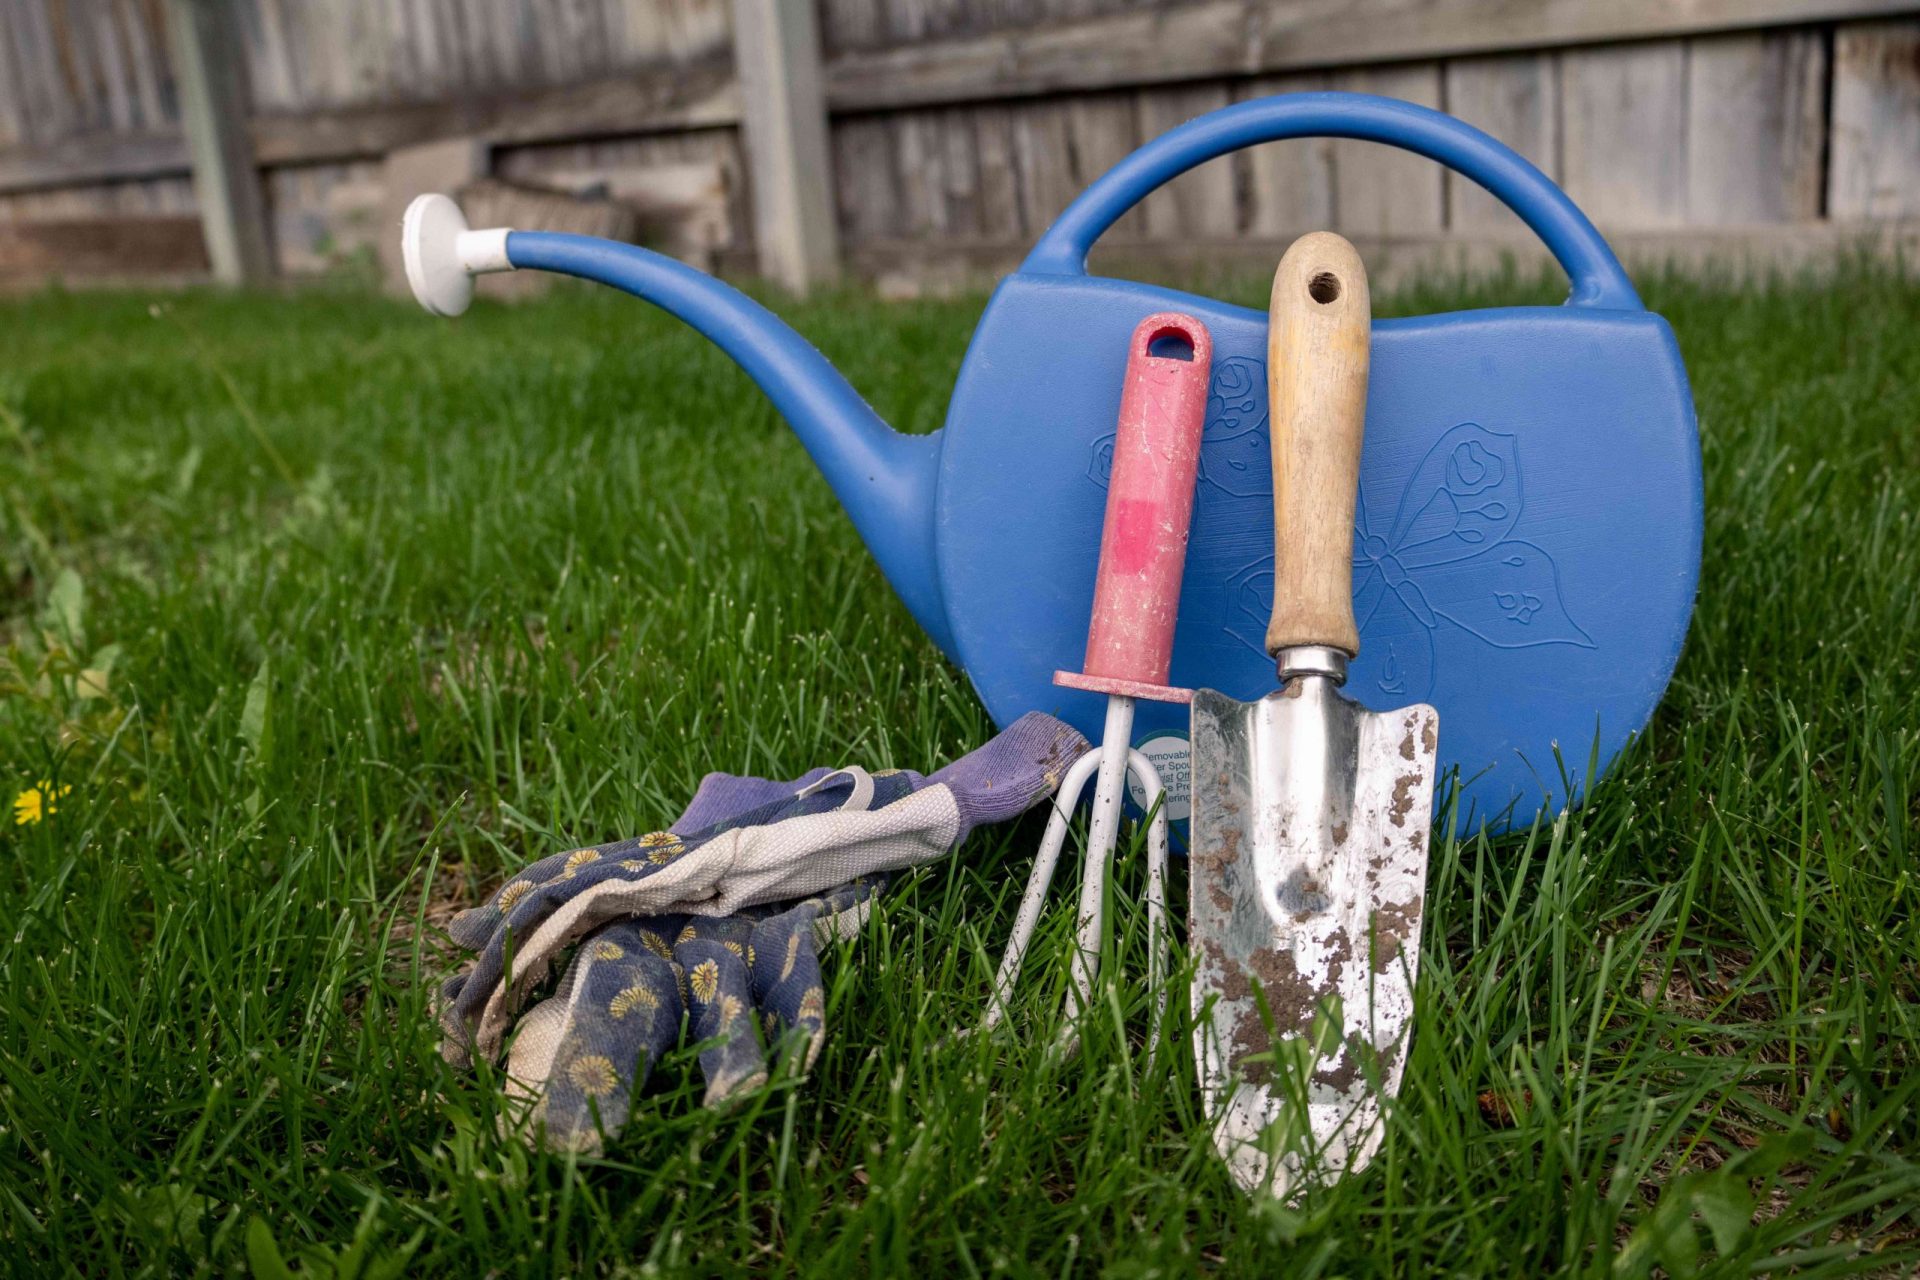 variedad de herramientas de jardinería en el patio trasero: regadera, guantes, paleta, comedero